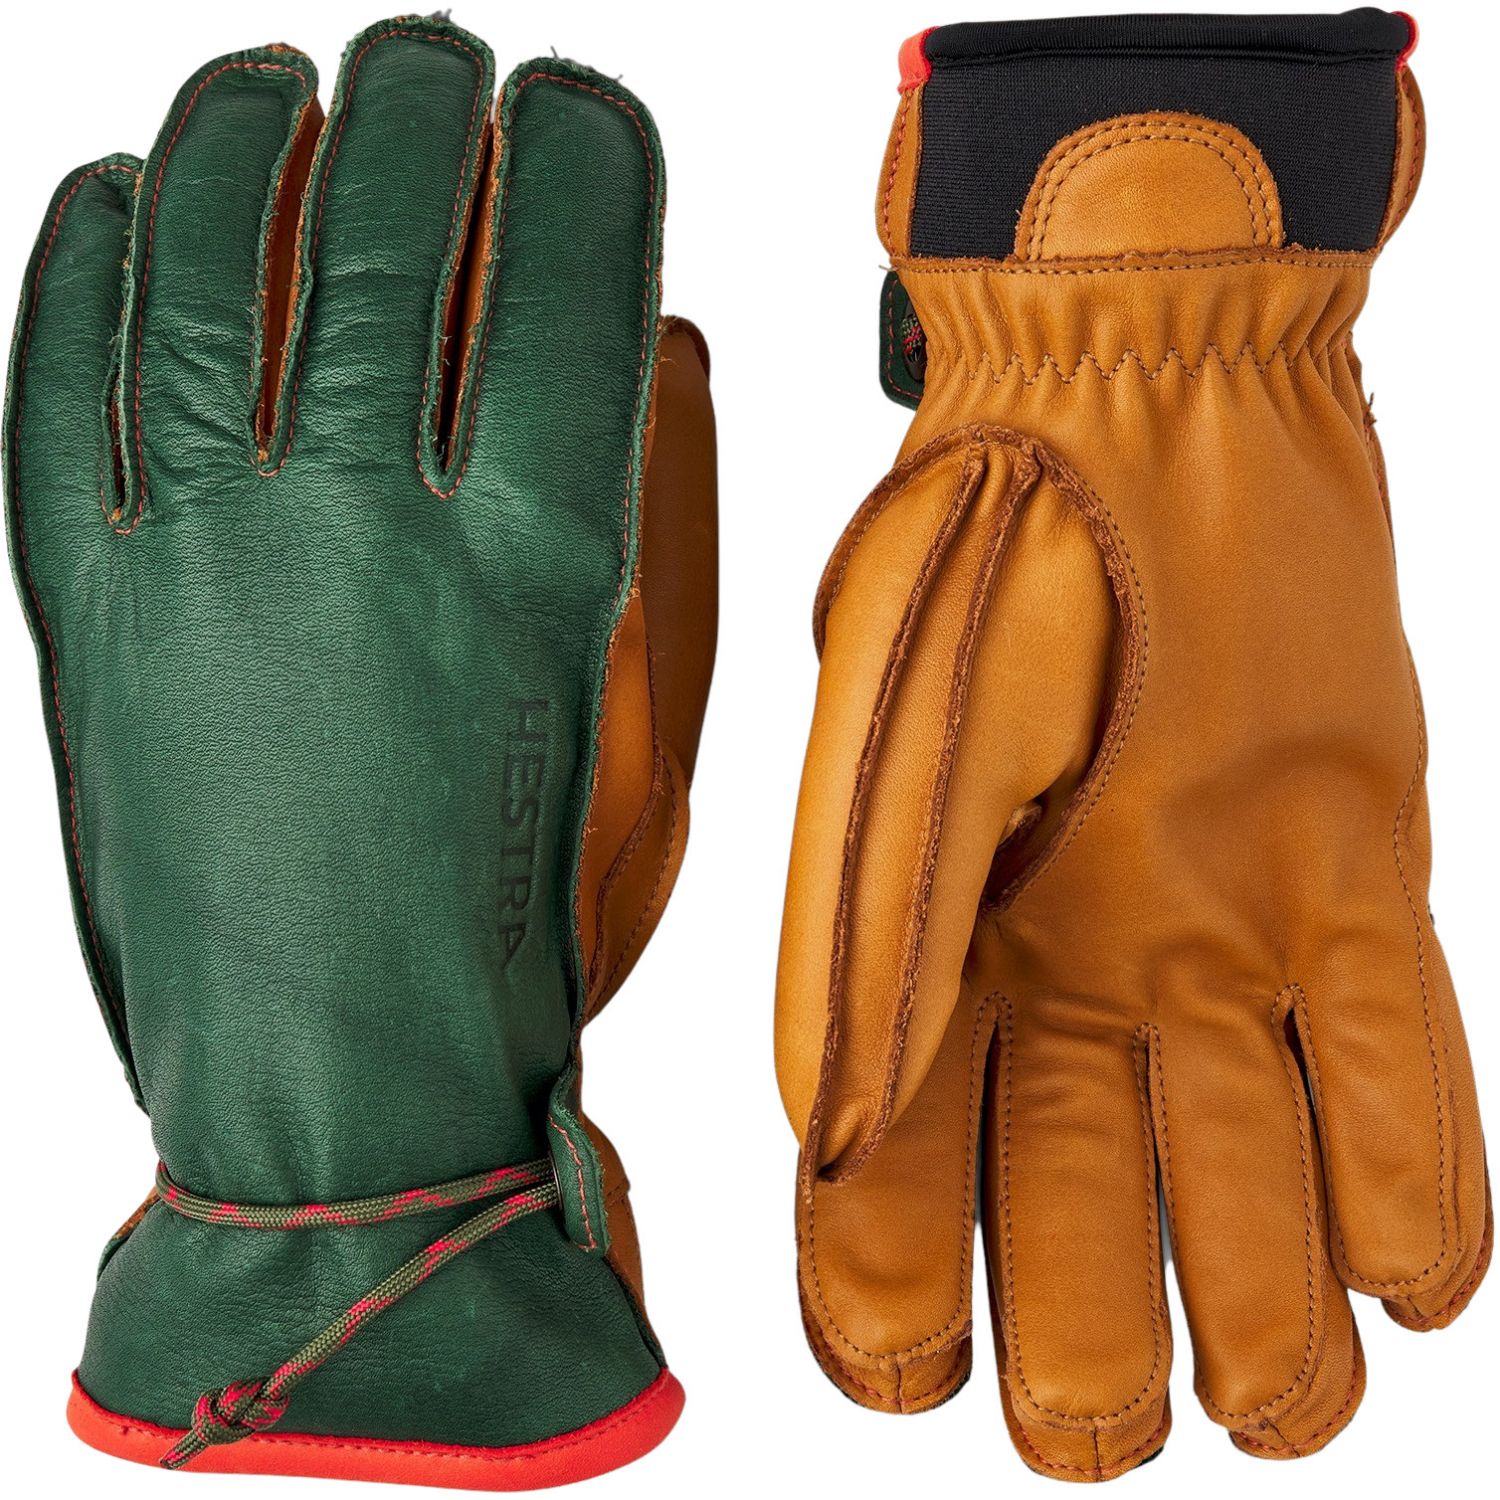 Brug Hestra Wakayama, handsker, mørkegrøn/kork til en forbedret oplevelse